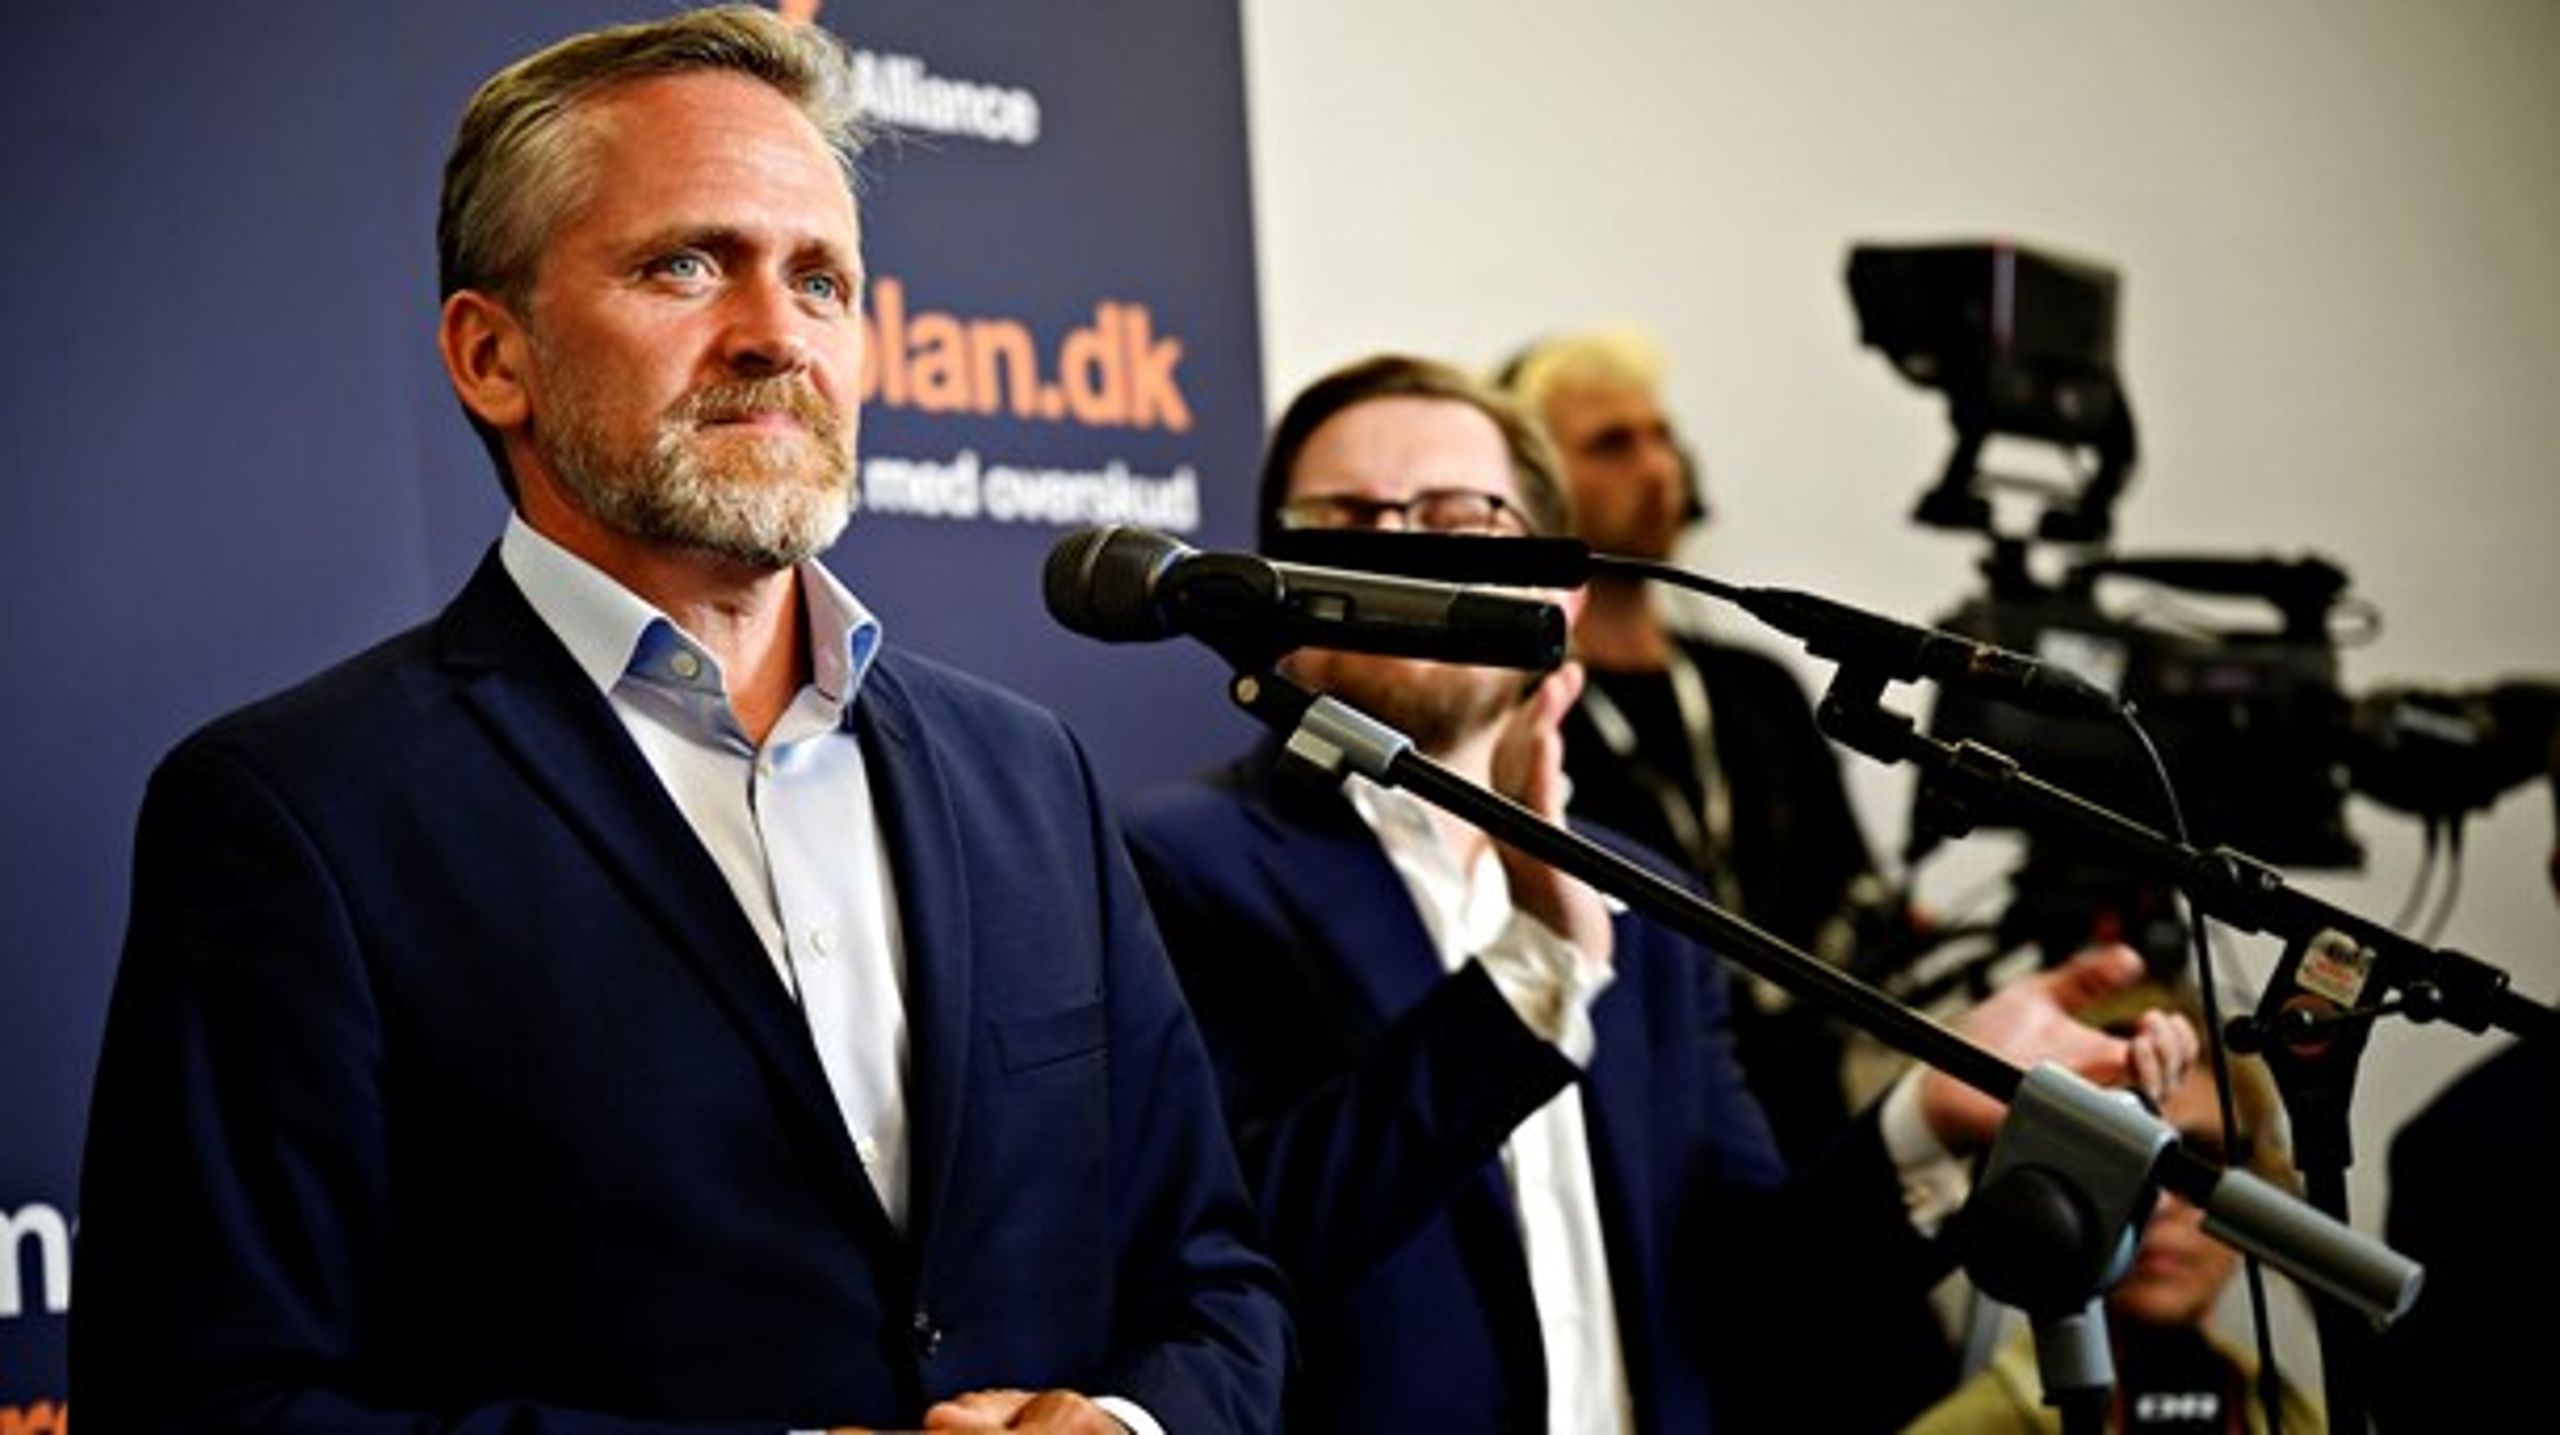 Anders Samuelsen (LA) opnåede ikke selv en plads i Folketinget og er nu også færdig som politisk leder for Liberal Alliance.&nbsp;